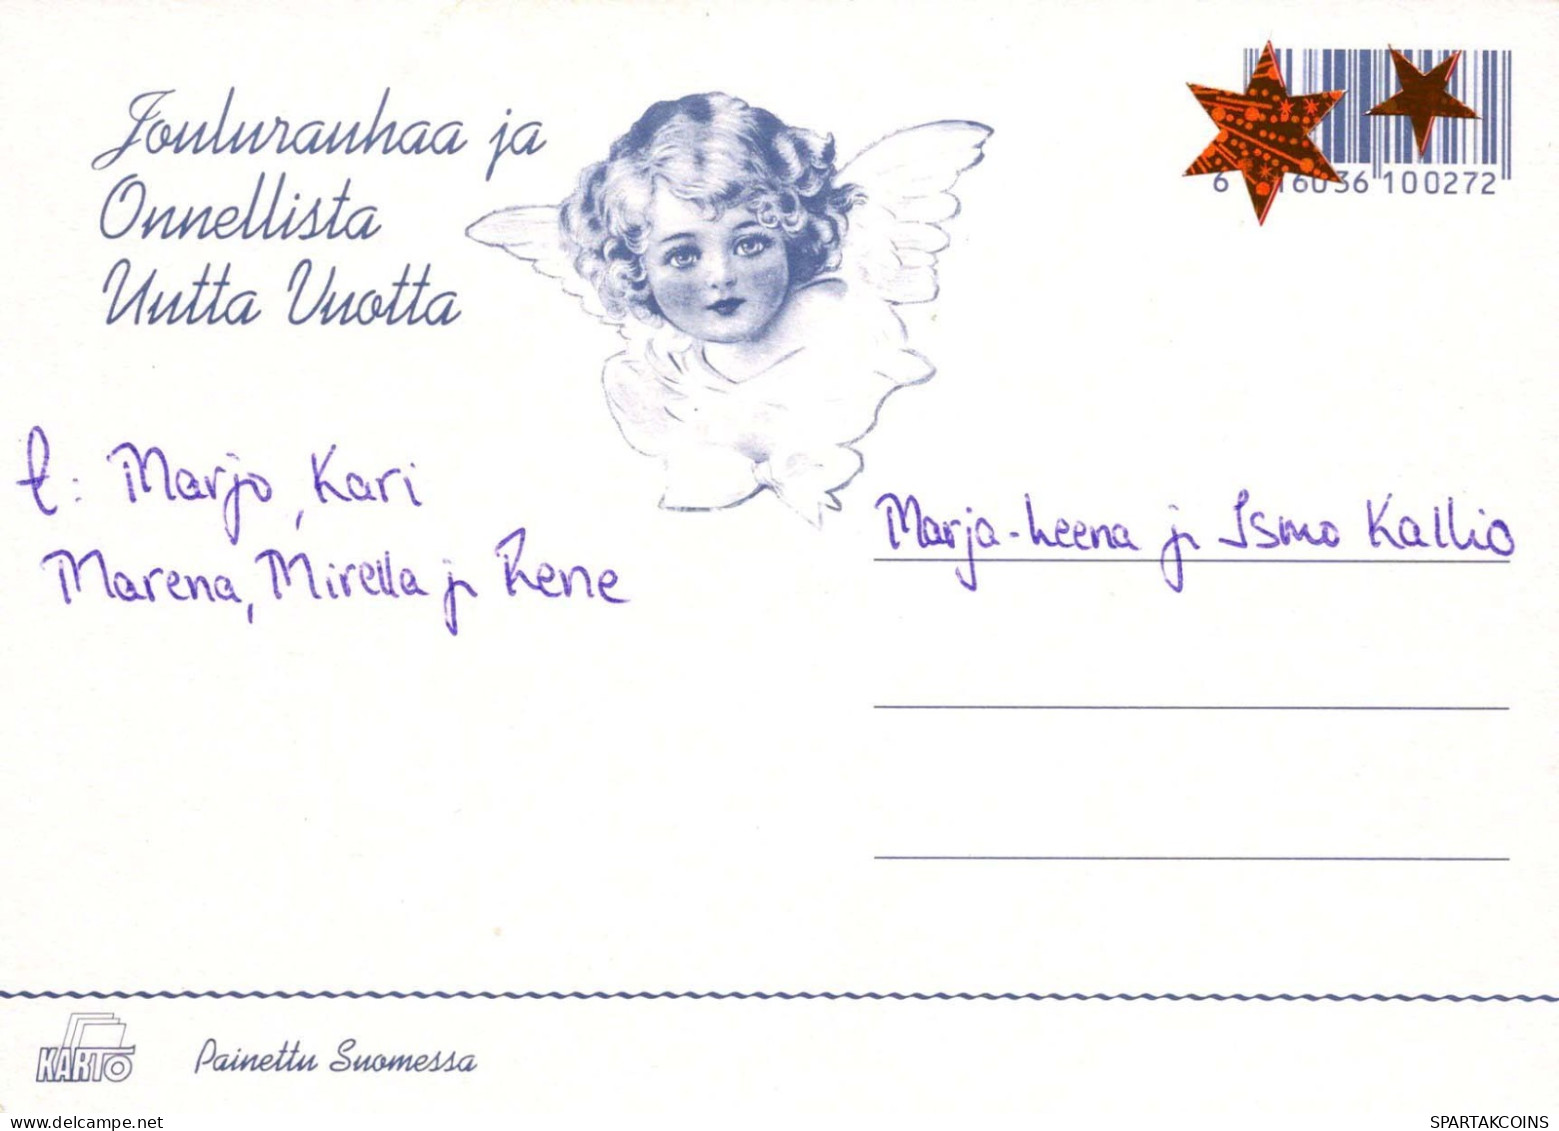 Vierge Marie Madone Bébé JÉSUS Noël Religion Vintage Carte Postale CPSM #PBB925.A - Vergine Maria E Madonne